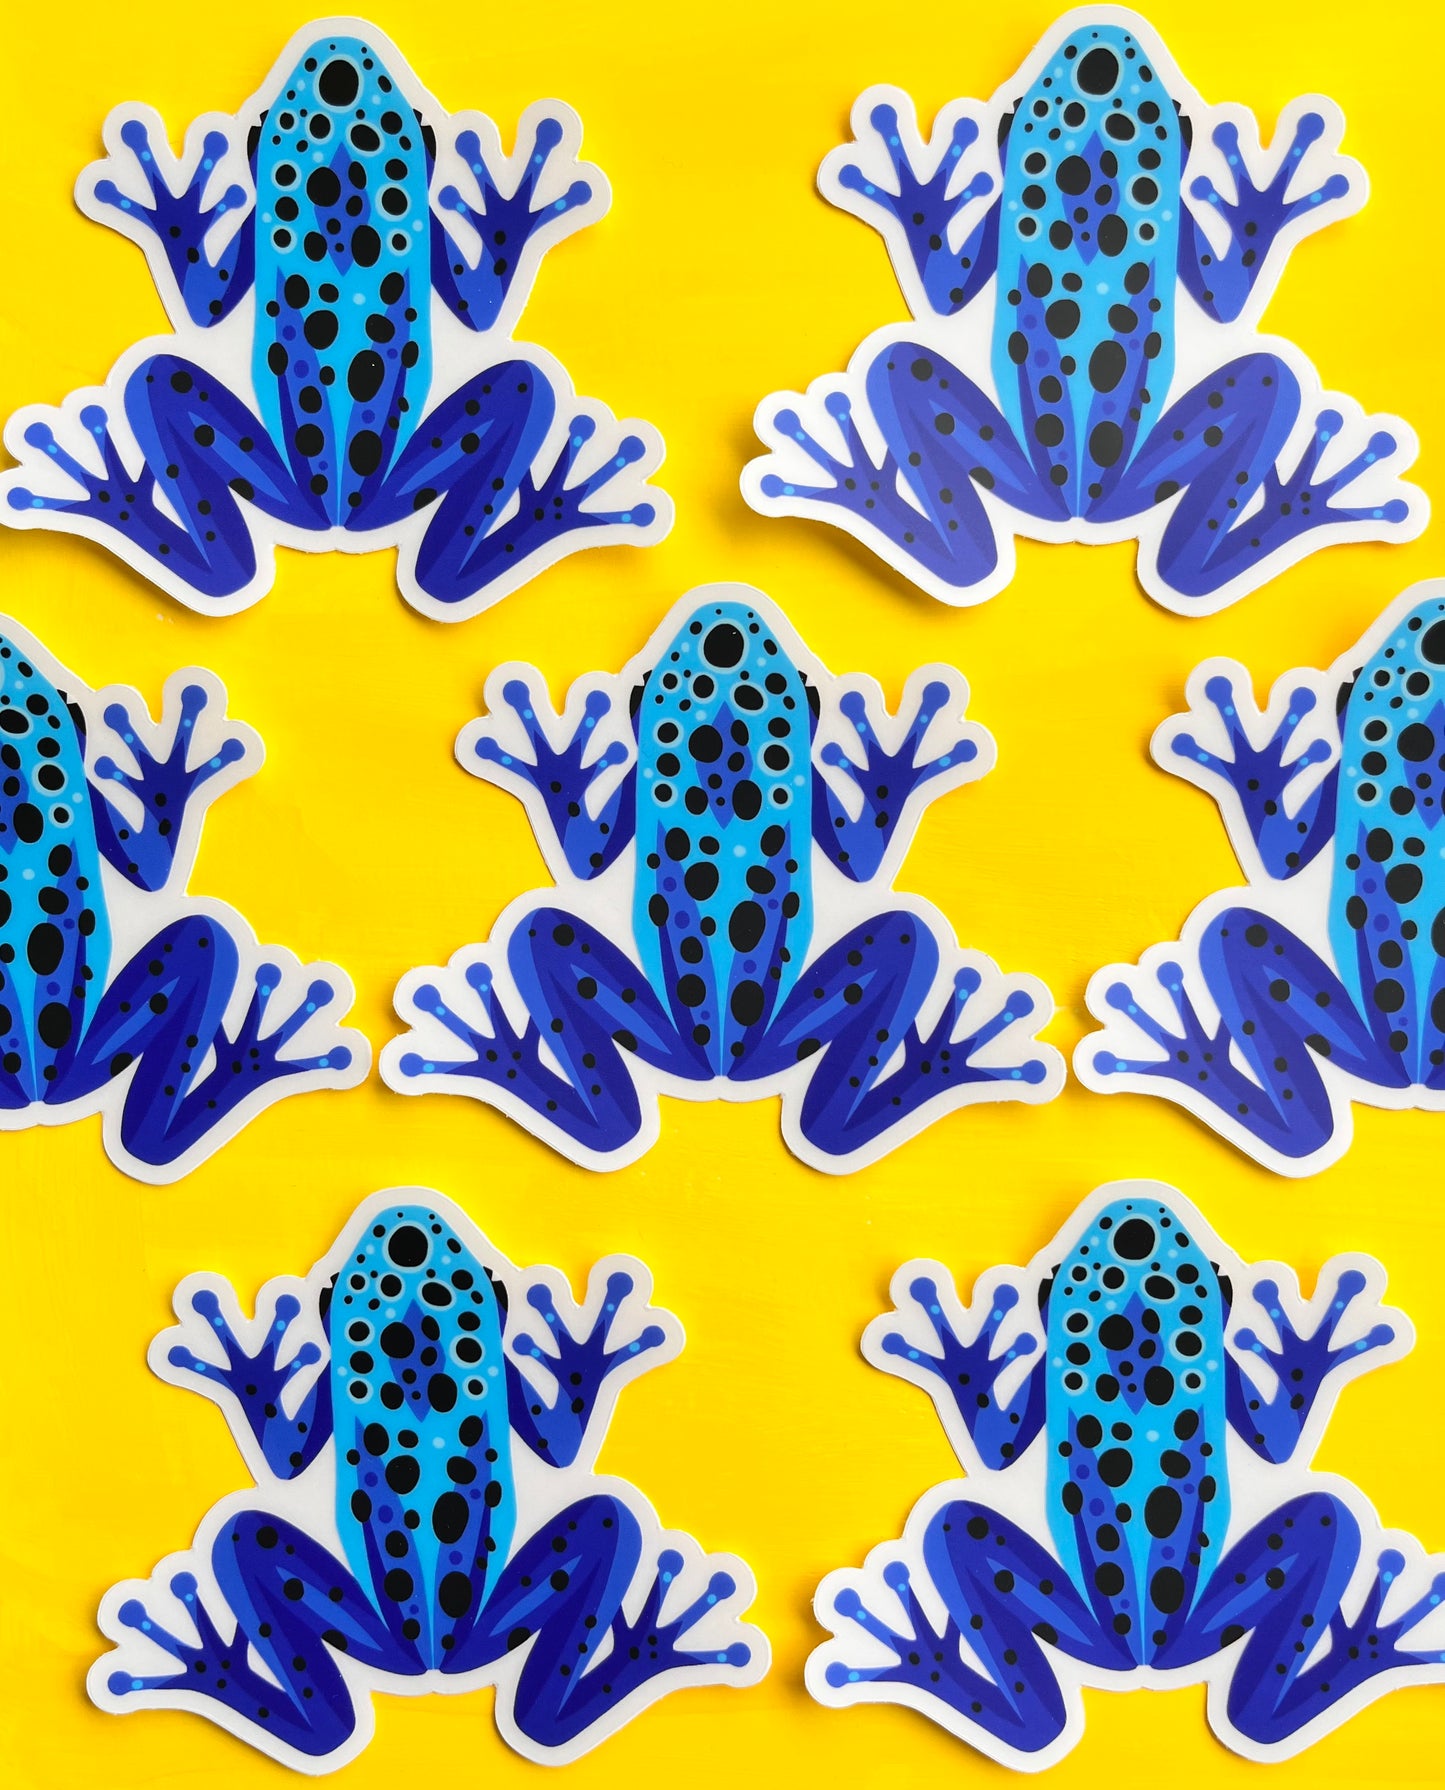 Poison Dart Frog Sticker